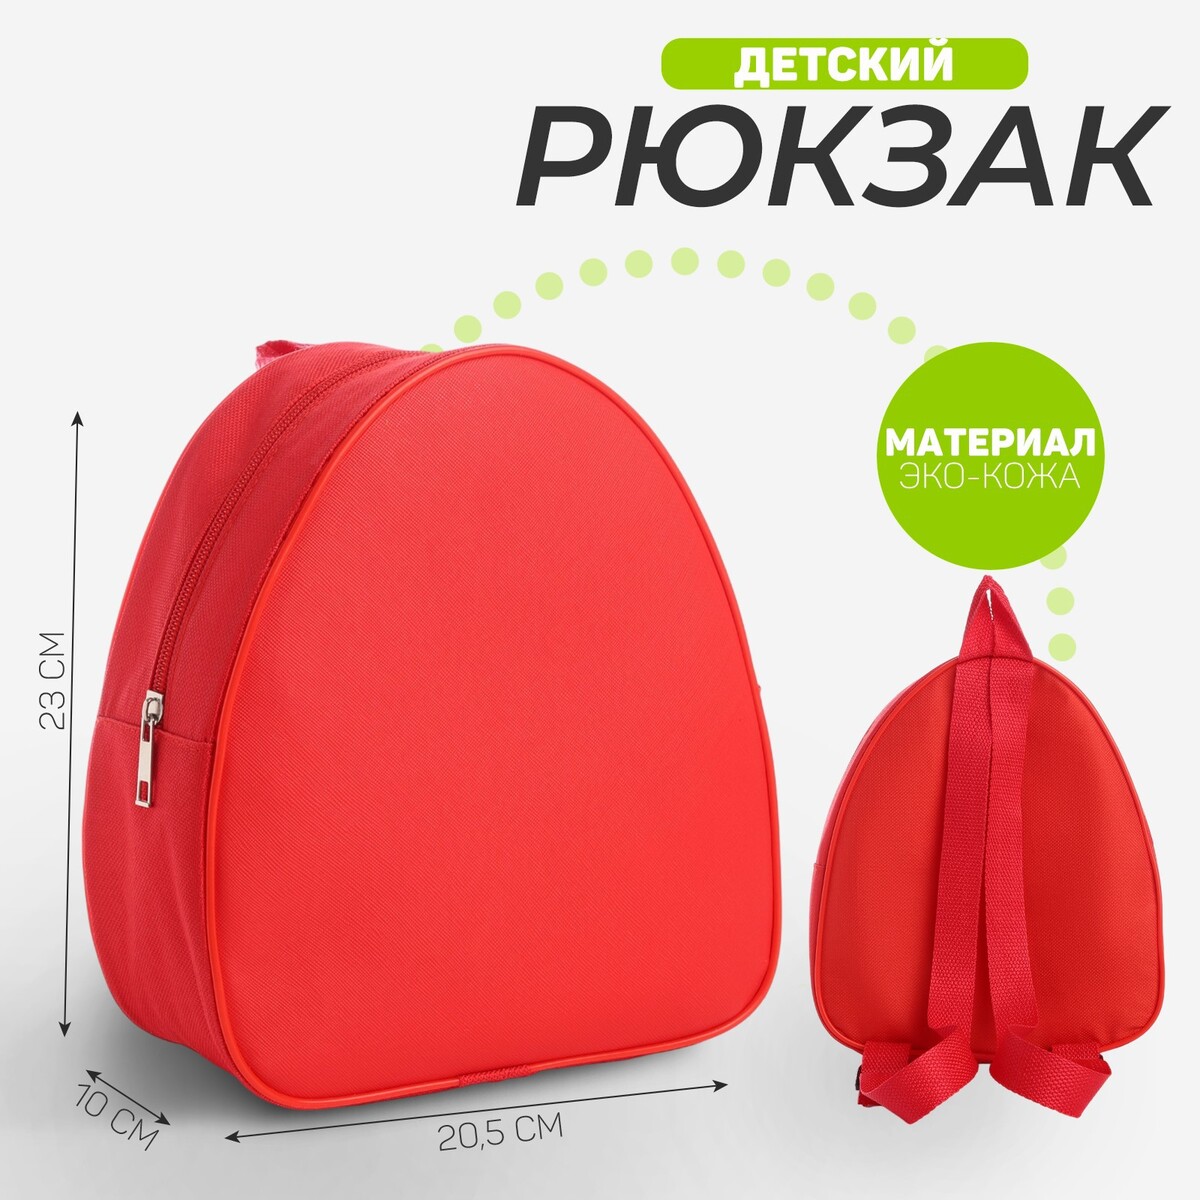 Рюкзак детский для девочки, 23х20,5 см, отдел на молнии, цвет красный